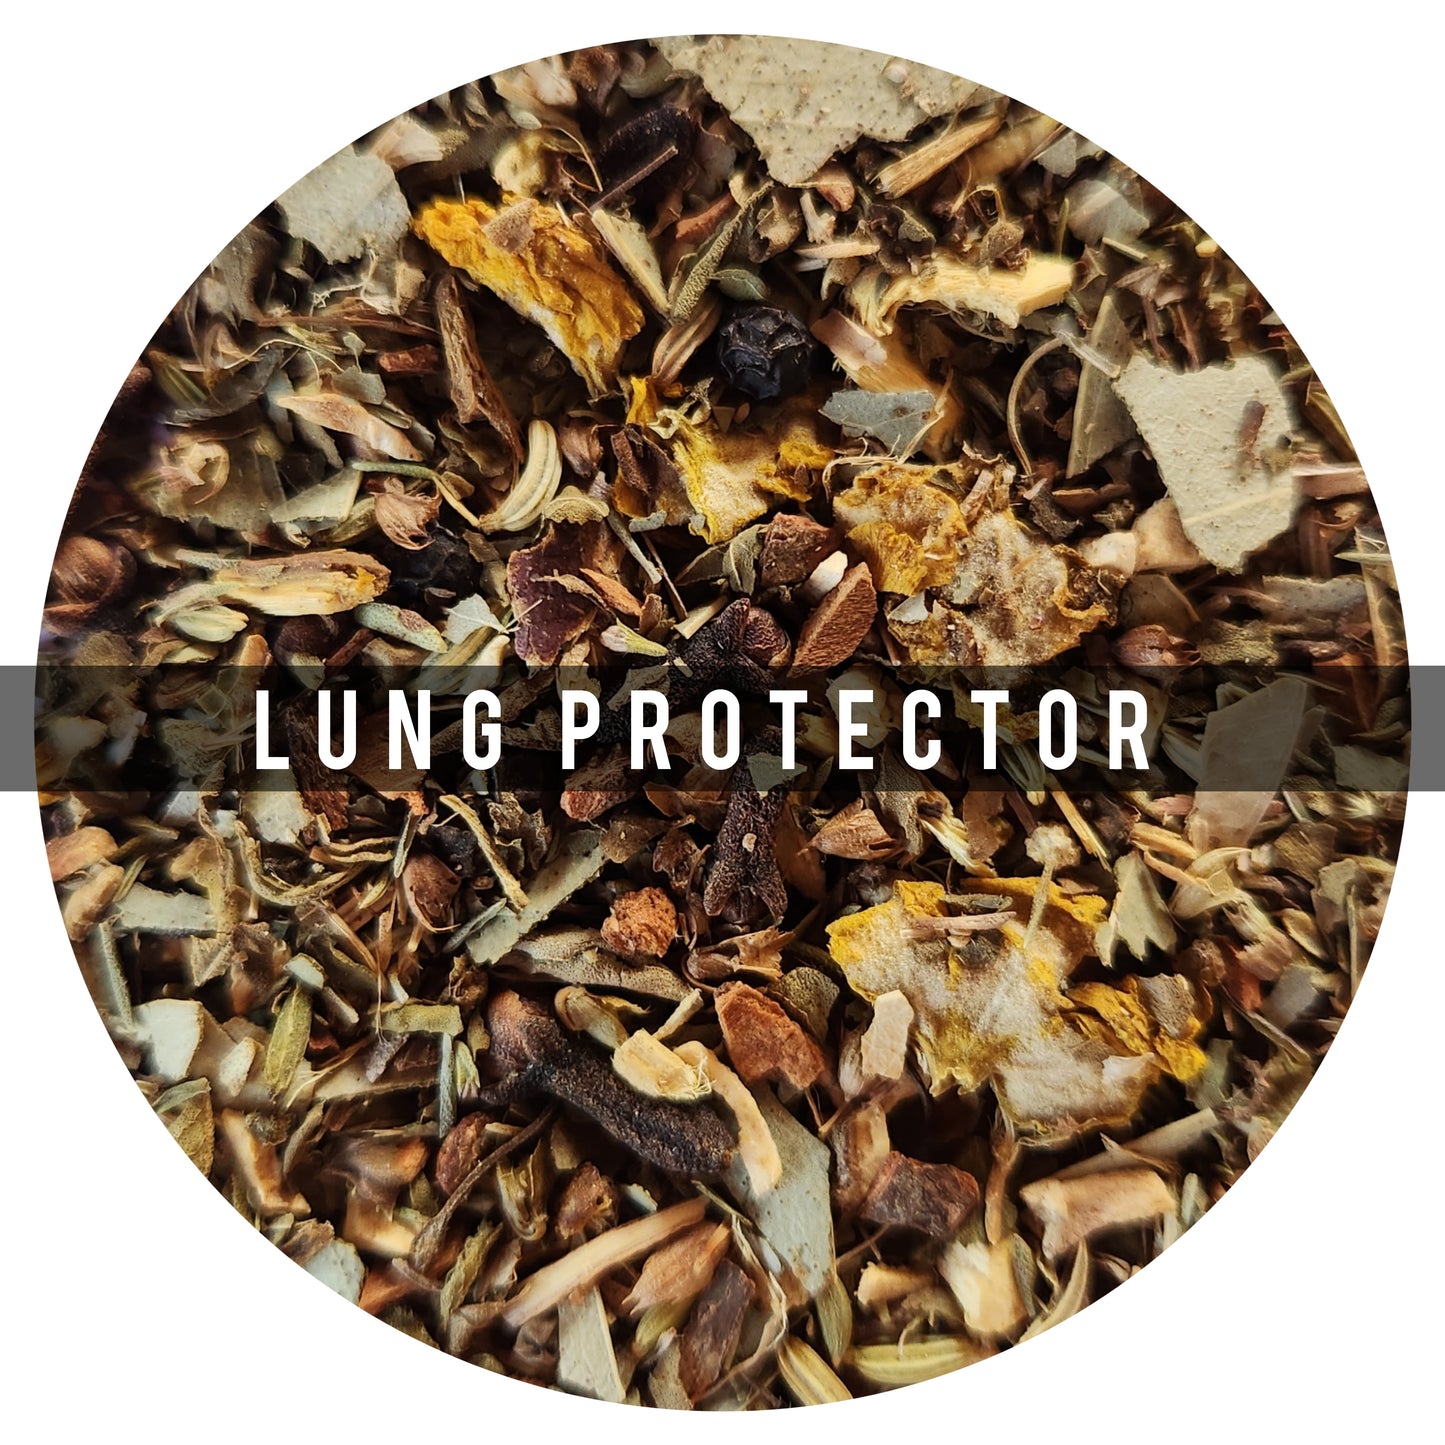 Lung Protector 90g: Es una mezcla herbal para el bienestar de tus pulmones, se sabe que el eucalipto mejora la salud respiratoria, reduce la azúcar en la sangre. Lung Protector es ideal para las personas con asma, dolores de garganta